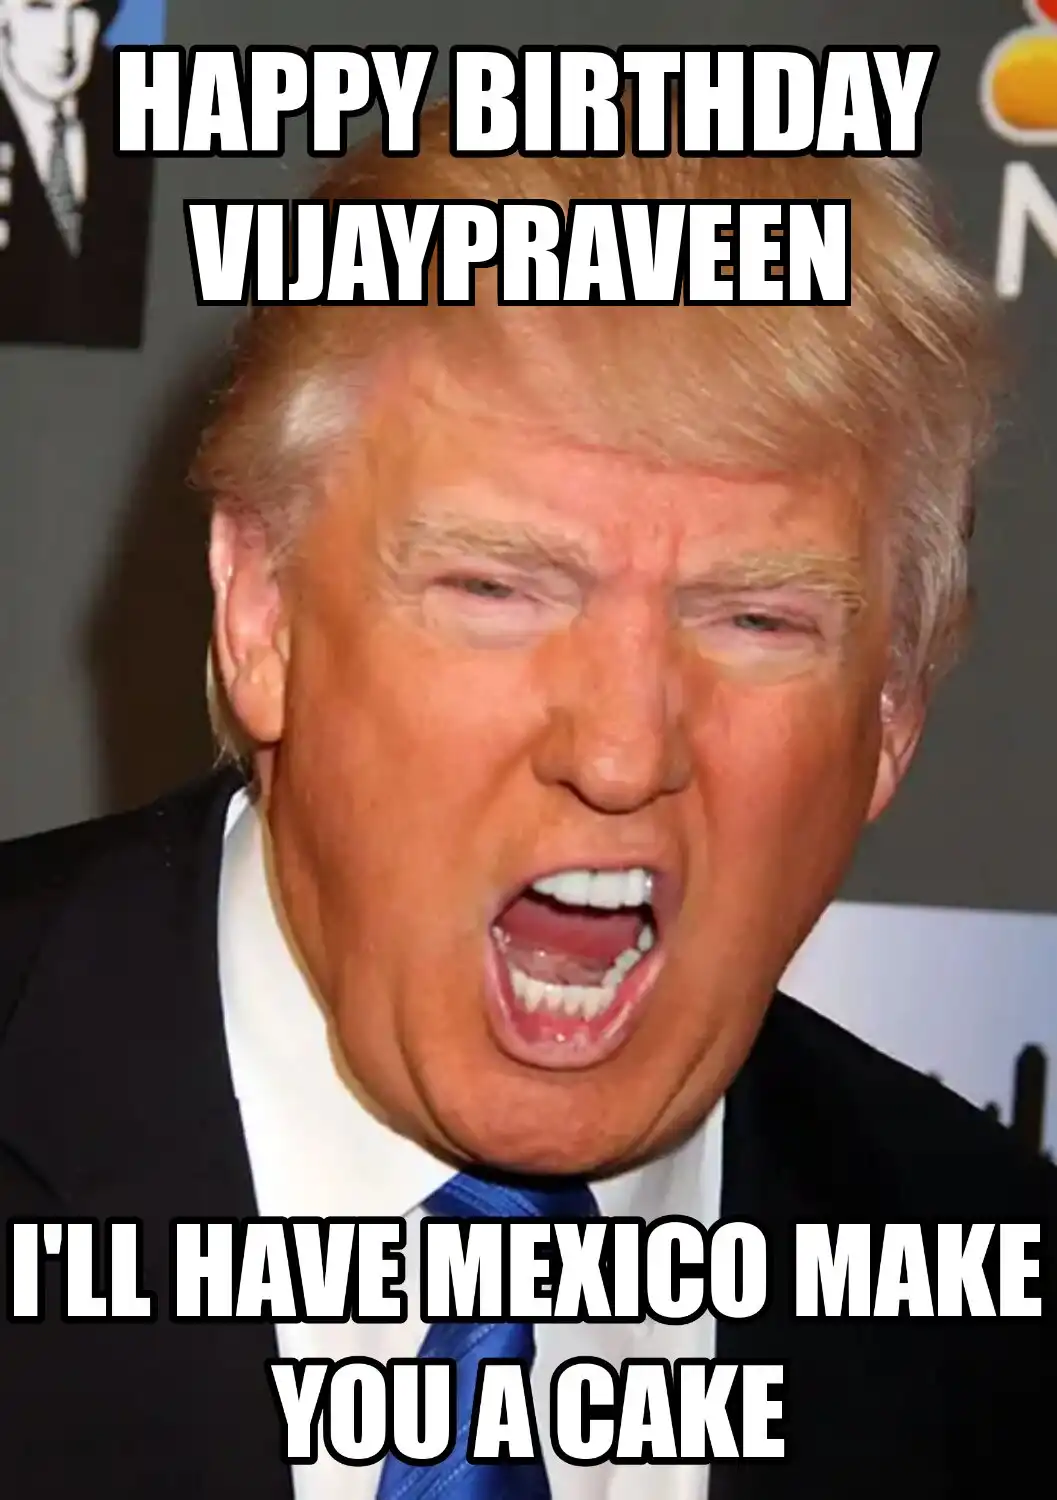 Happy Birthday Vijaypraveen Mexico Make You A Cake Meme